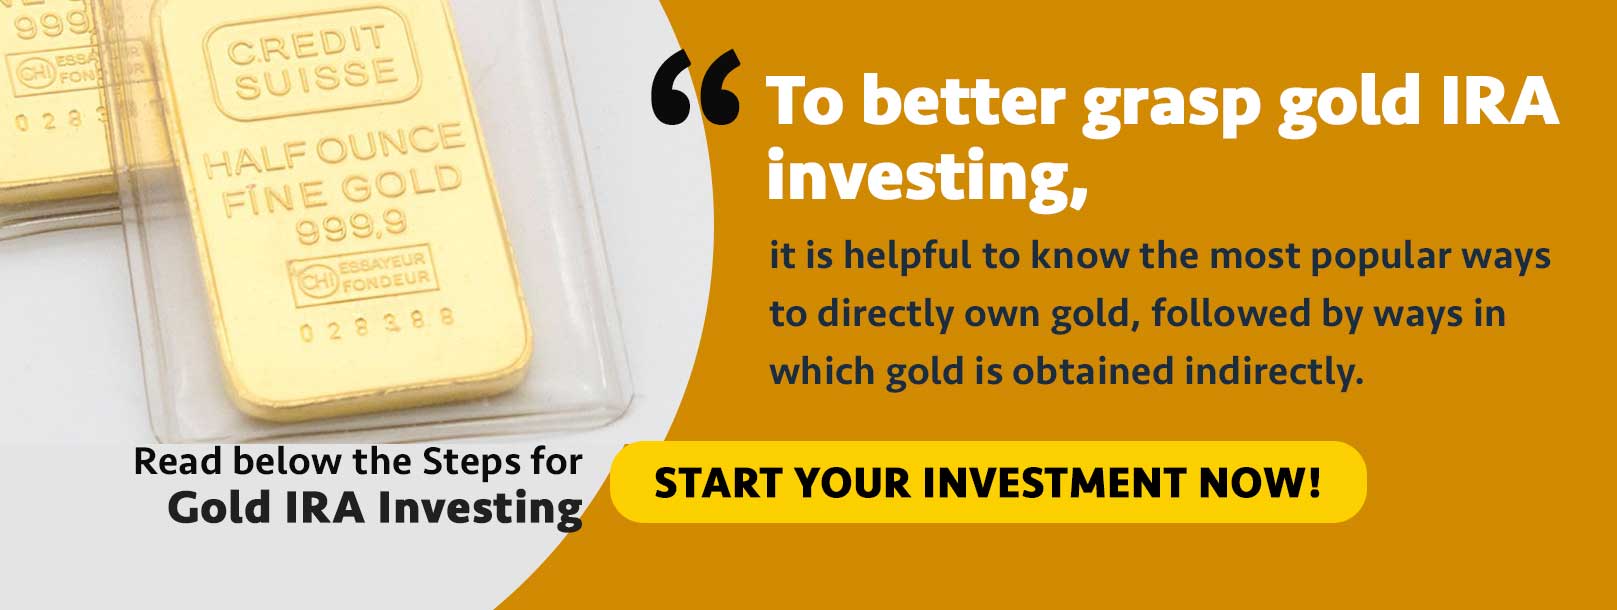 gold investing ira